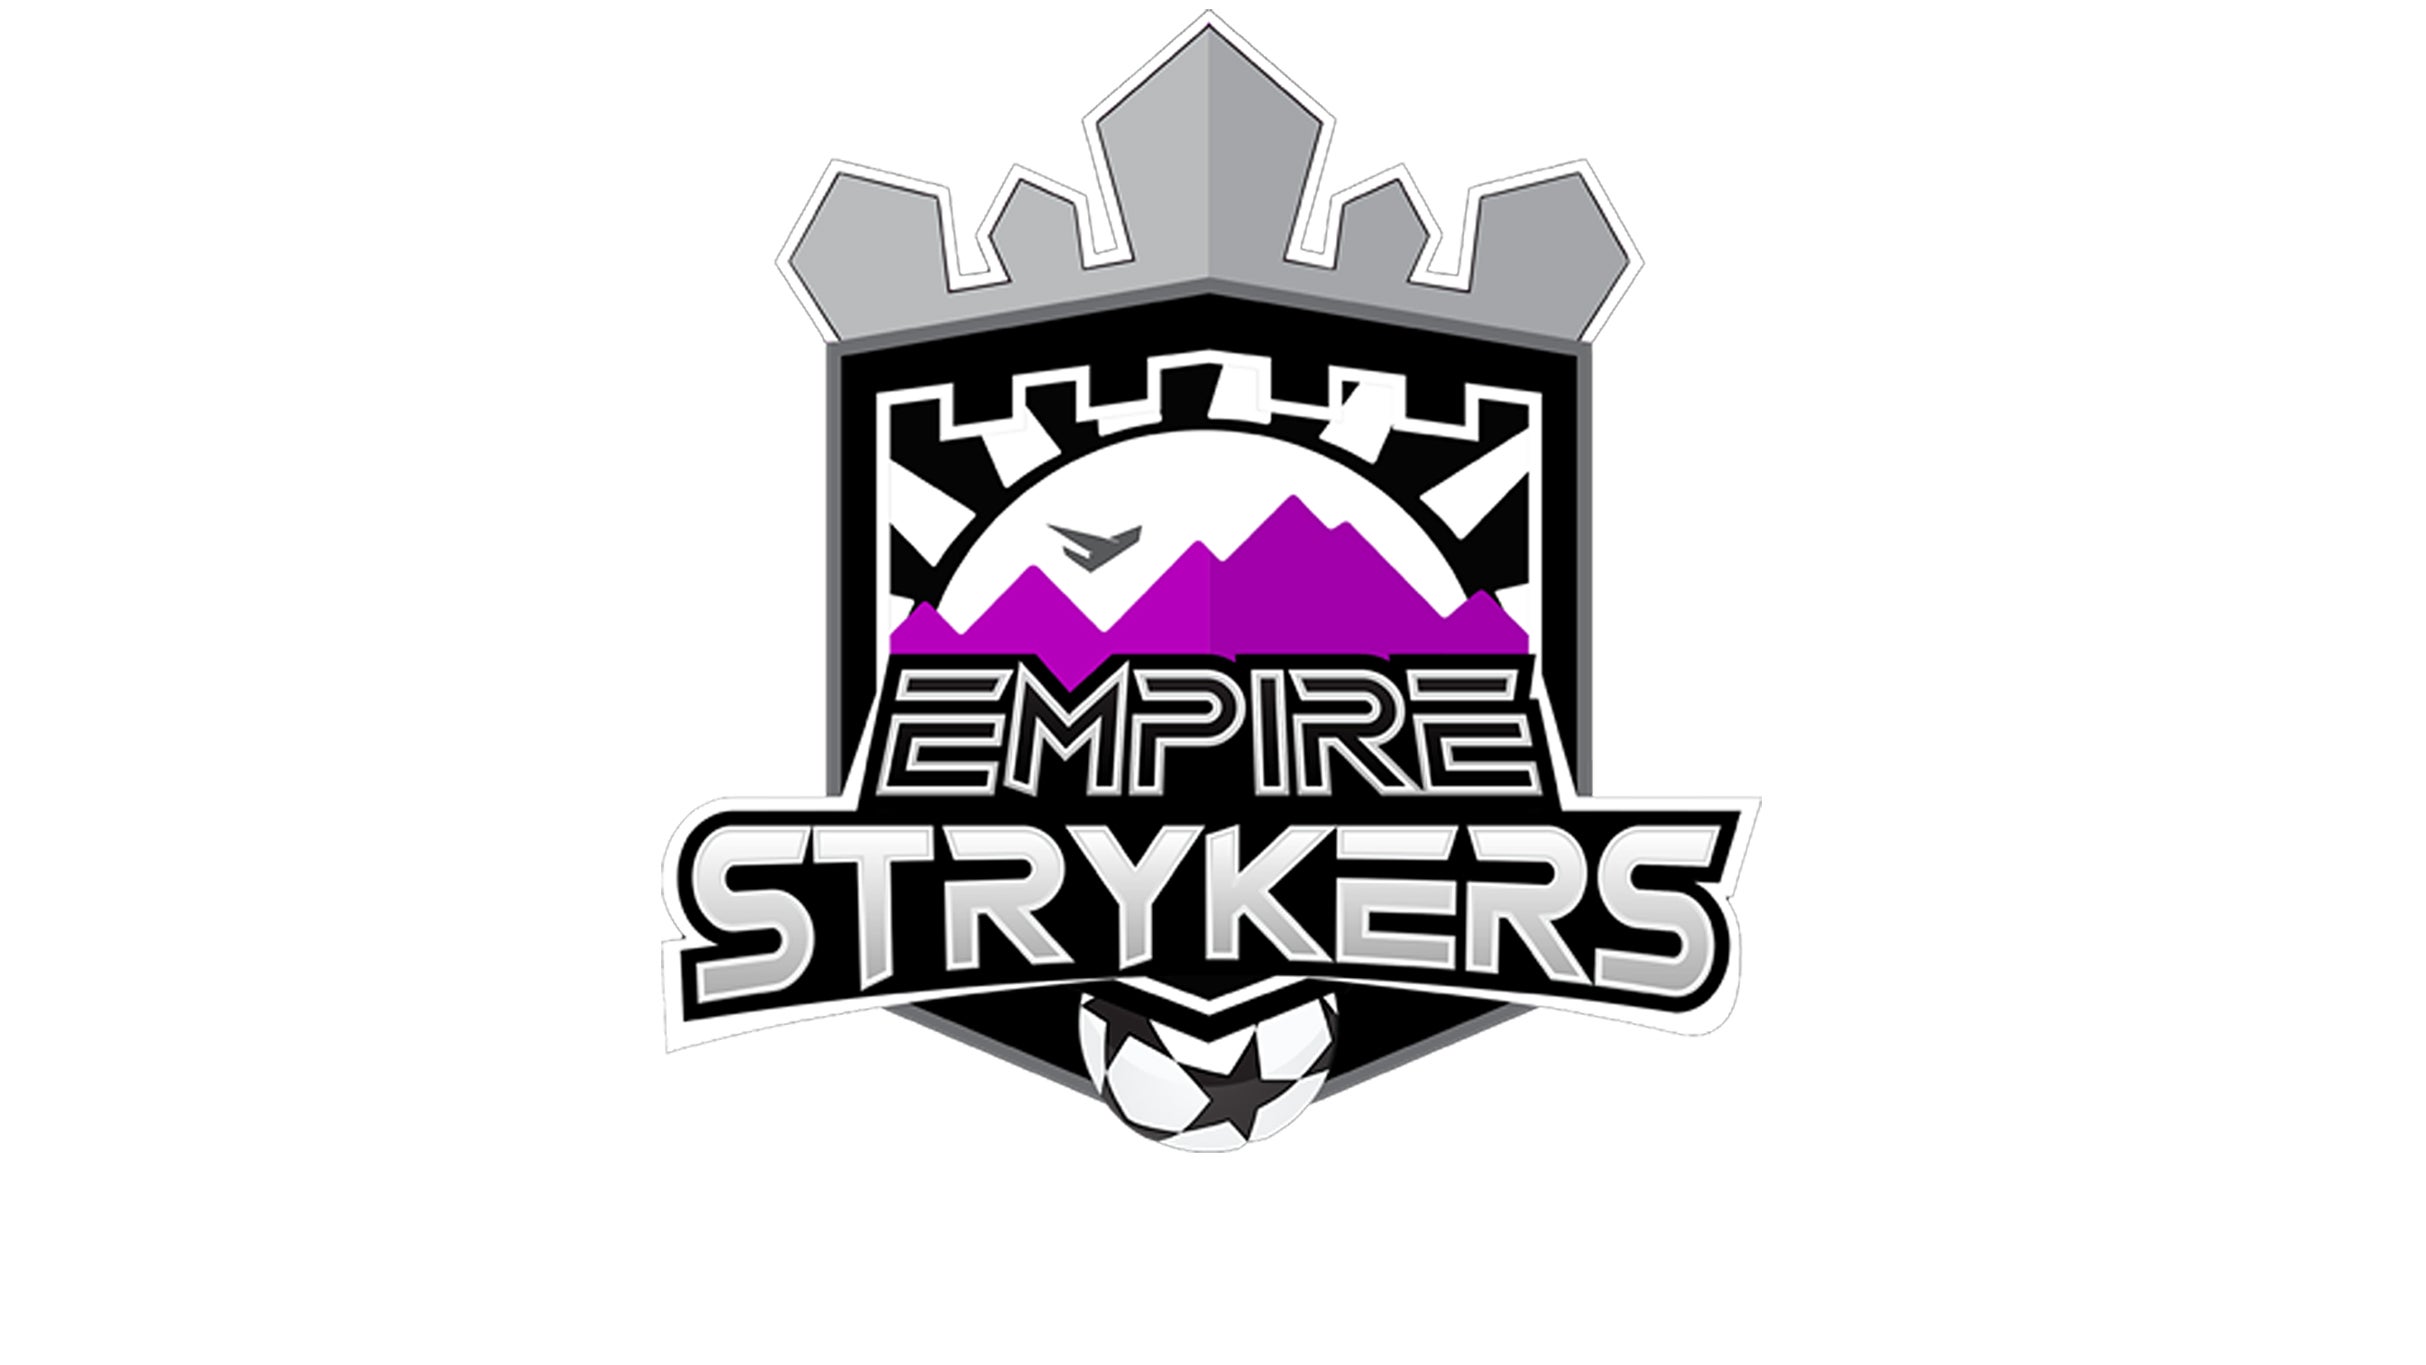 Empire Strykers vs Tacoma Stars at Toyota Arena